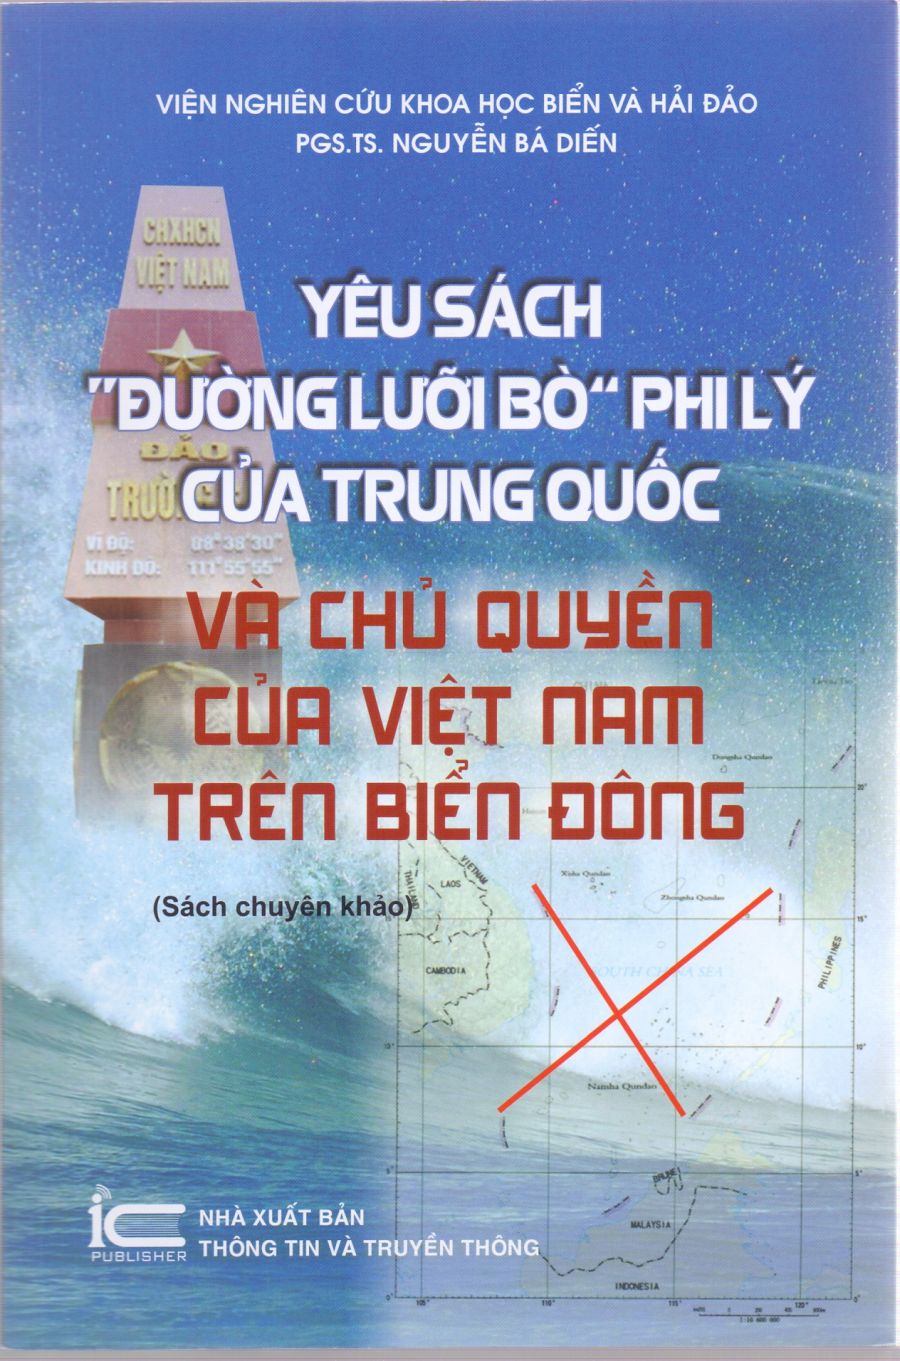 Yêu sách “ Đường lưỡi bò “ phi lý của Trung Quốc và chủ quyền của Việt Nam trên Biển Đông